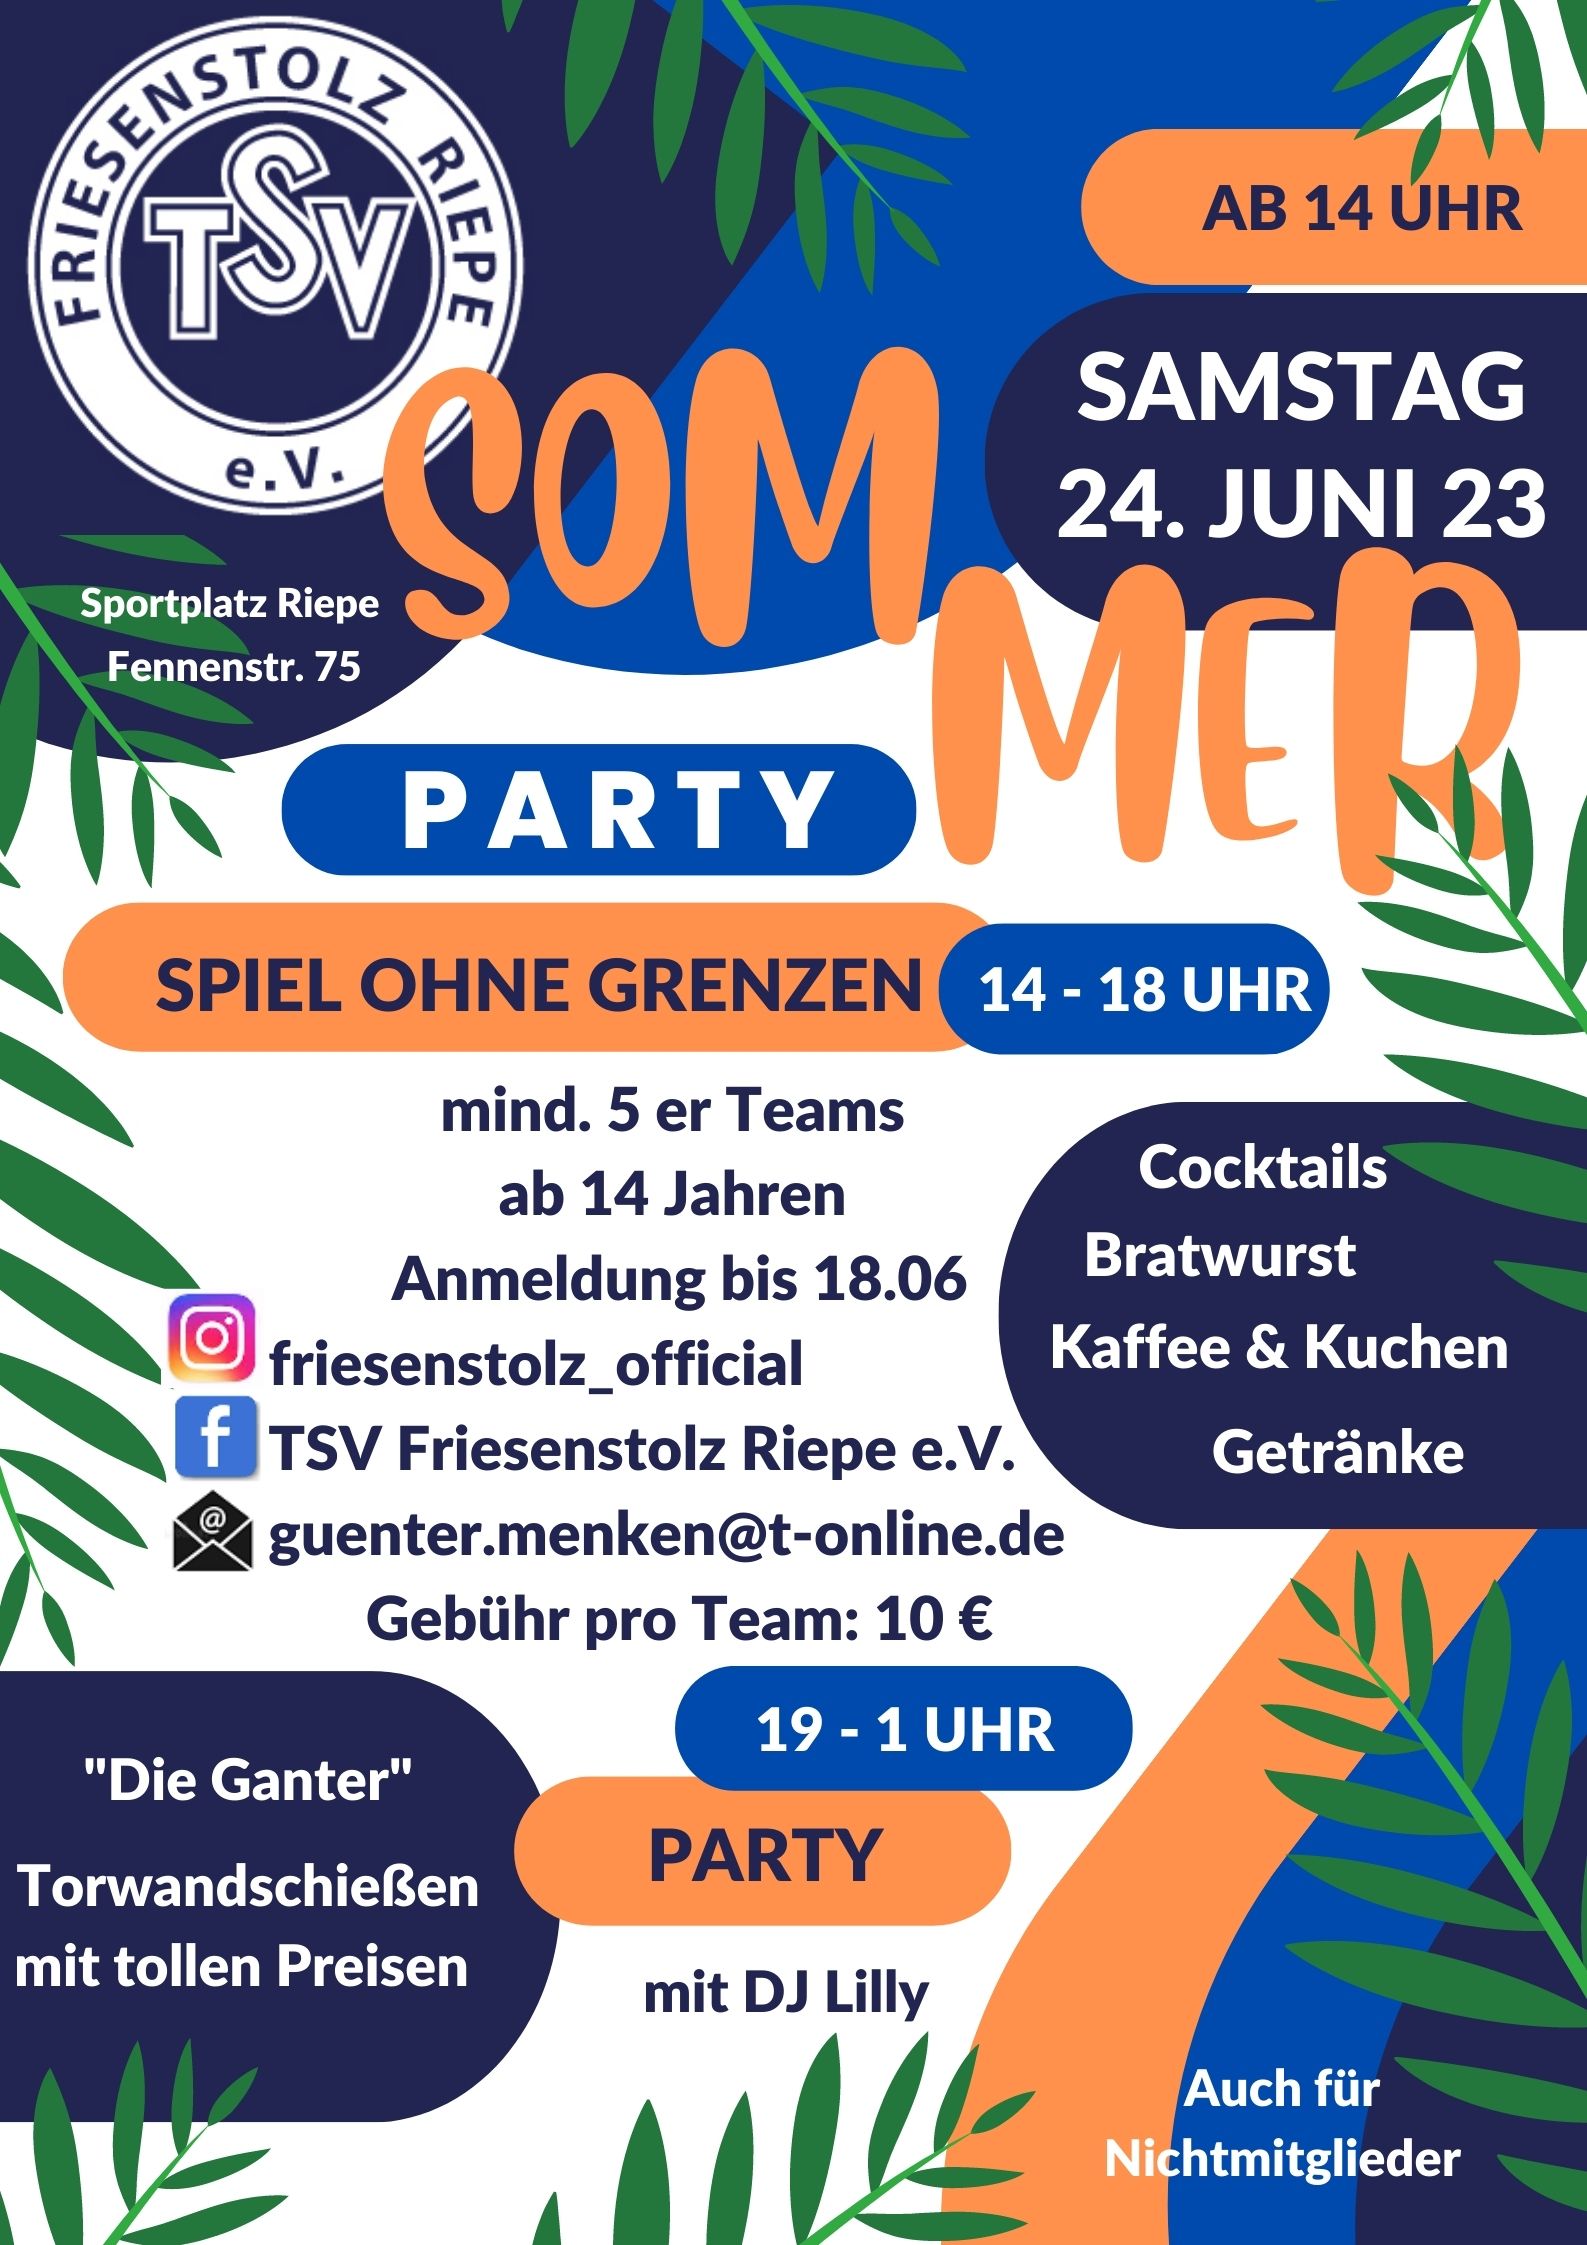 TSV Sommerparty am Samstag, 24. Juni 2023 mit Spiel ohne Grenzen von 14 bis 18 Uhr und Party mit DJ Lilly von 19 bis 1 Uhr - auch für Nichtmitglieder!